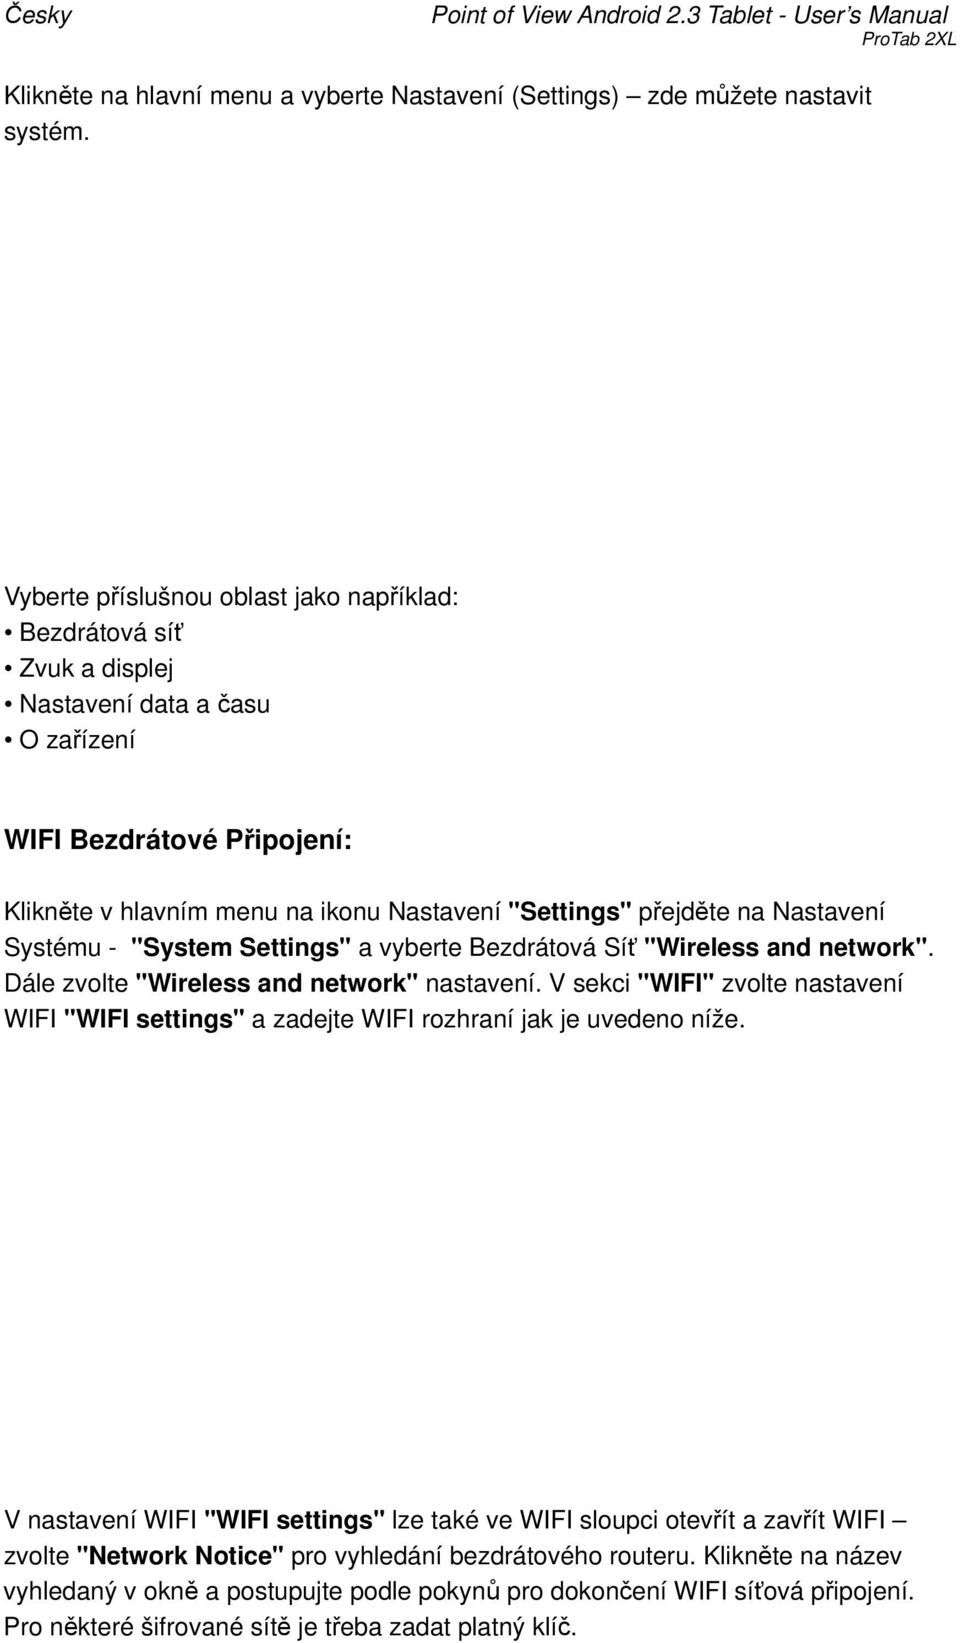 Nastavení Systému - "System Settings" a vyberte Bezdrátová Síť "Wireless and network". Dále zvolte "Wireless and network" nastavení.